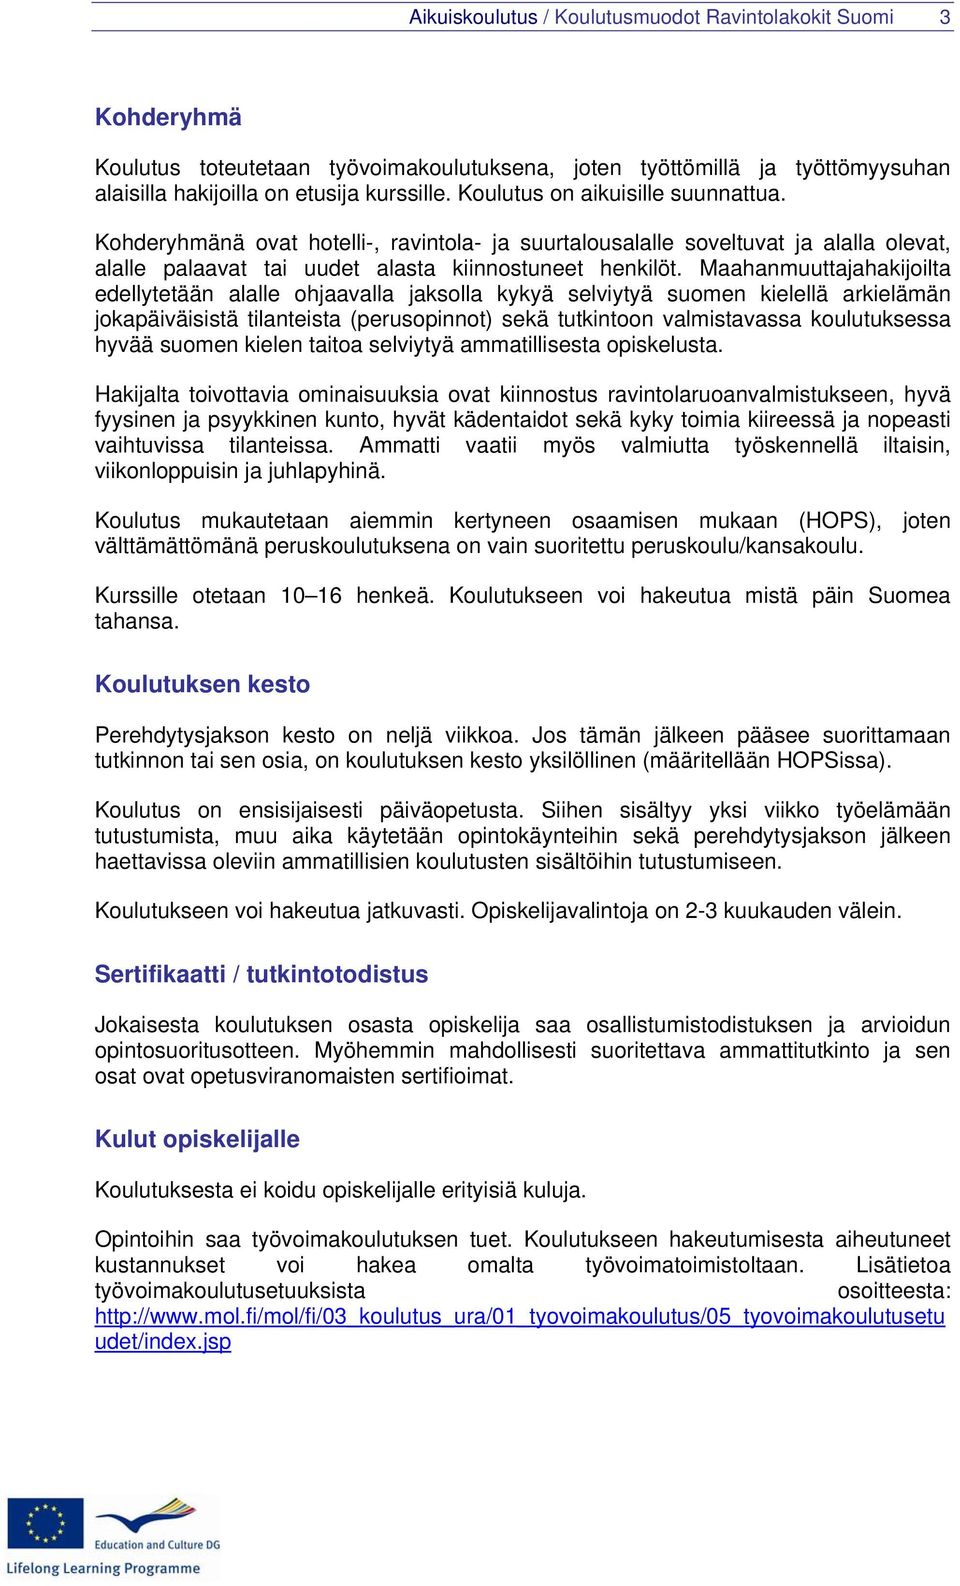 Maahanmuuttajahakijoilta edellytetään alalle ohjaavalla jaksolla kykyä selviytyä suomen kielellä arkielämän jokapäiväisistä tilanteista (perusopinnot) sekä tutkintoon valmistavassa koulutuksessa